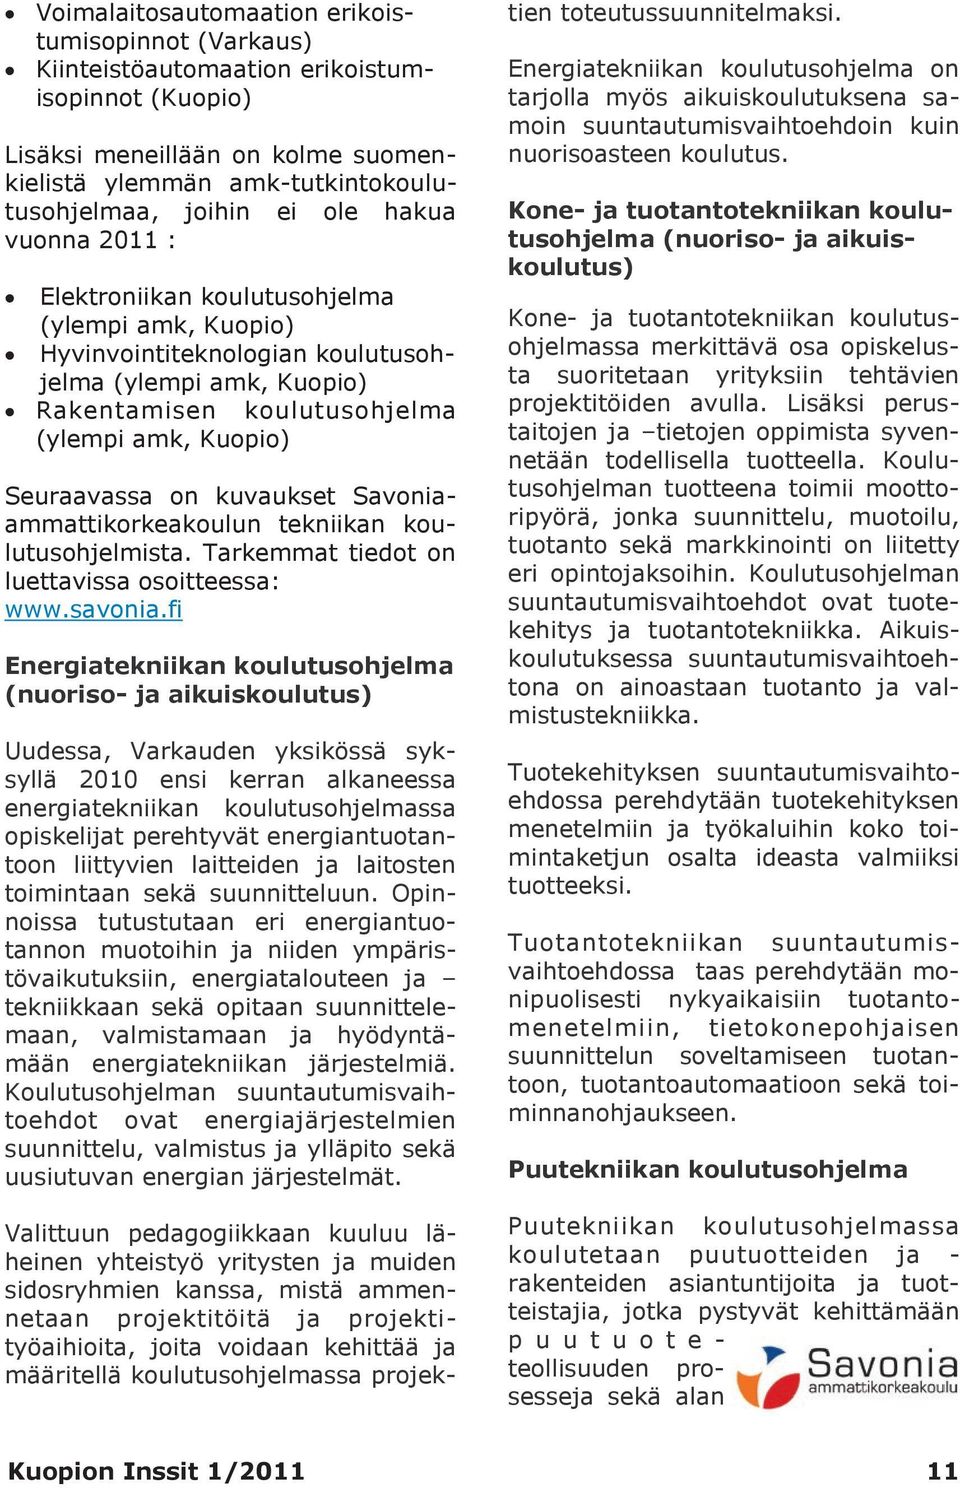 kuvaukset Savoniaammattikorkeakoulun tekniikan koulutusohjelmista. Tarkemmat tiedot on luettavissa osoitteessa: www.savonia.